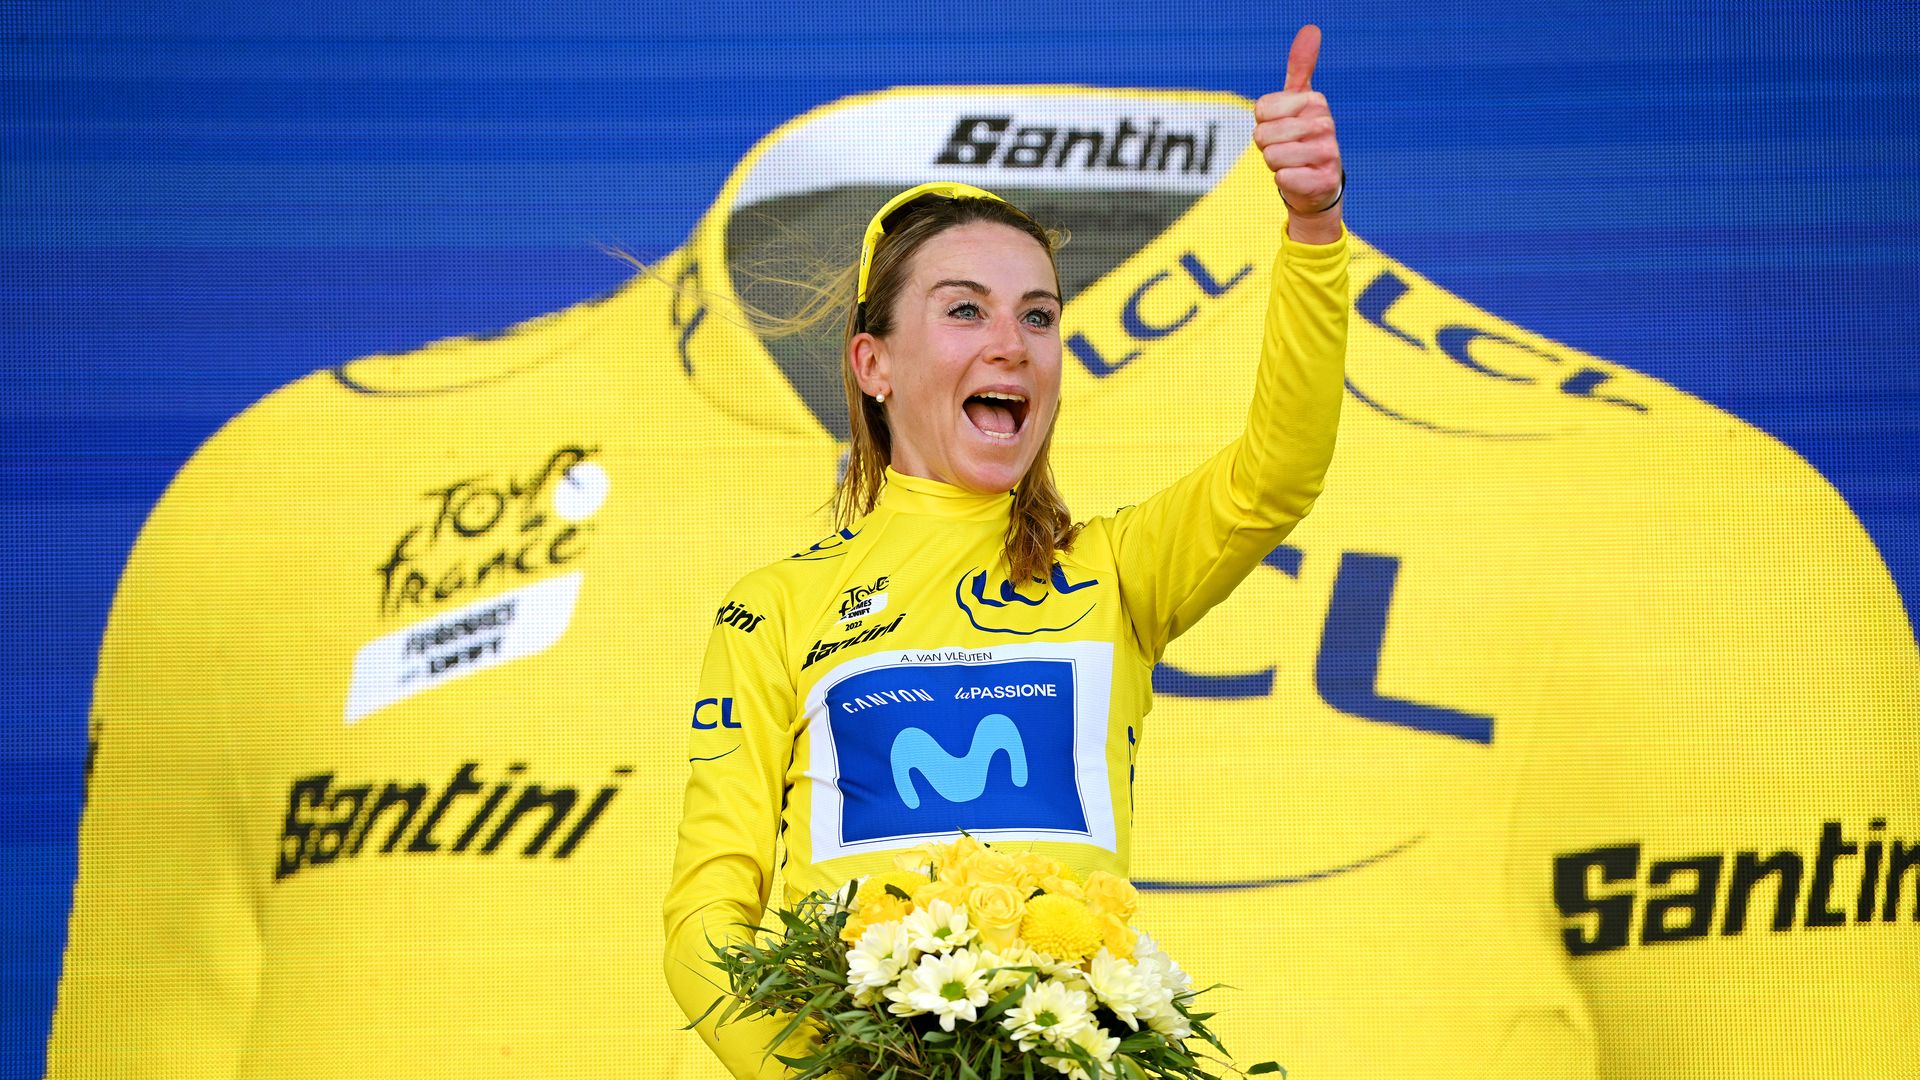 Tour de France Femmes winner